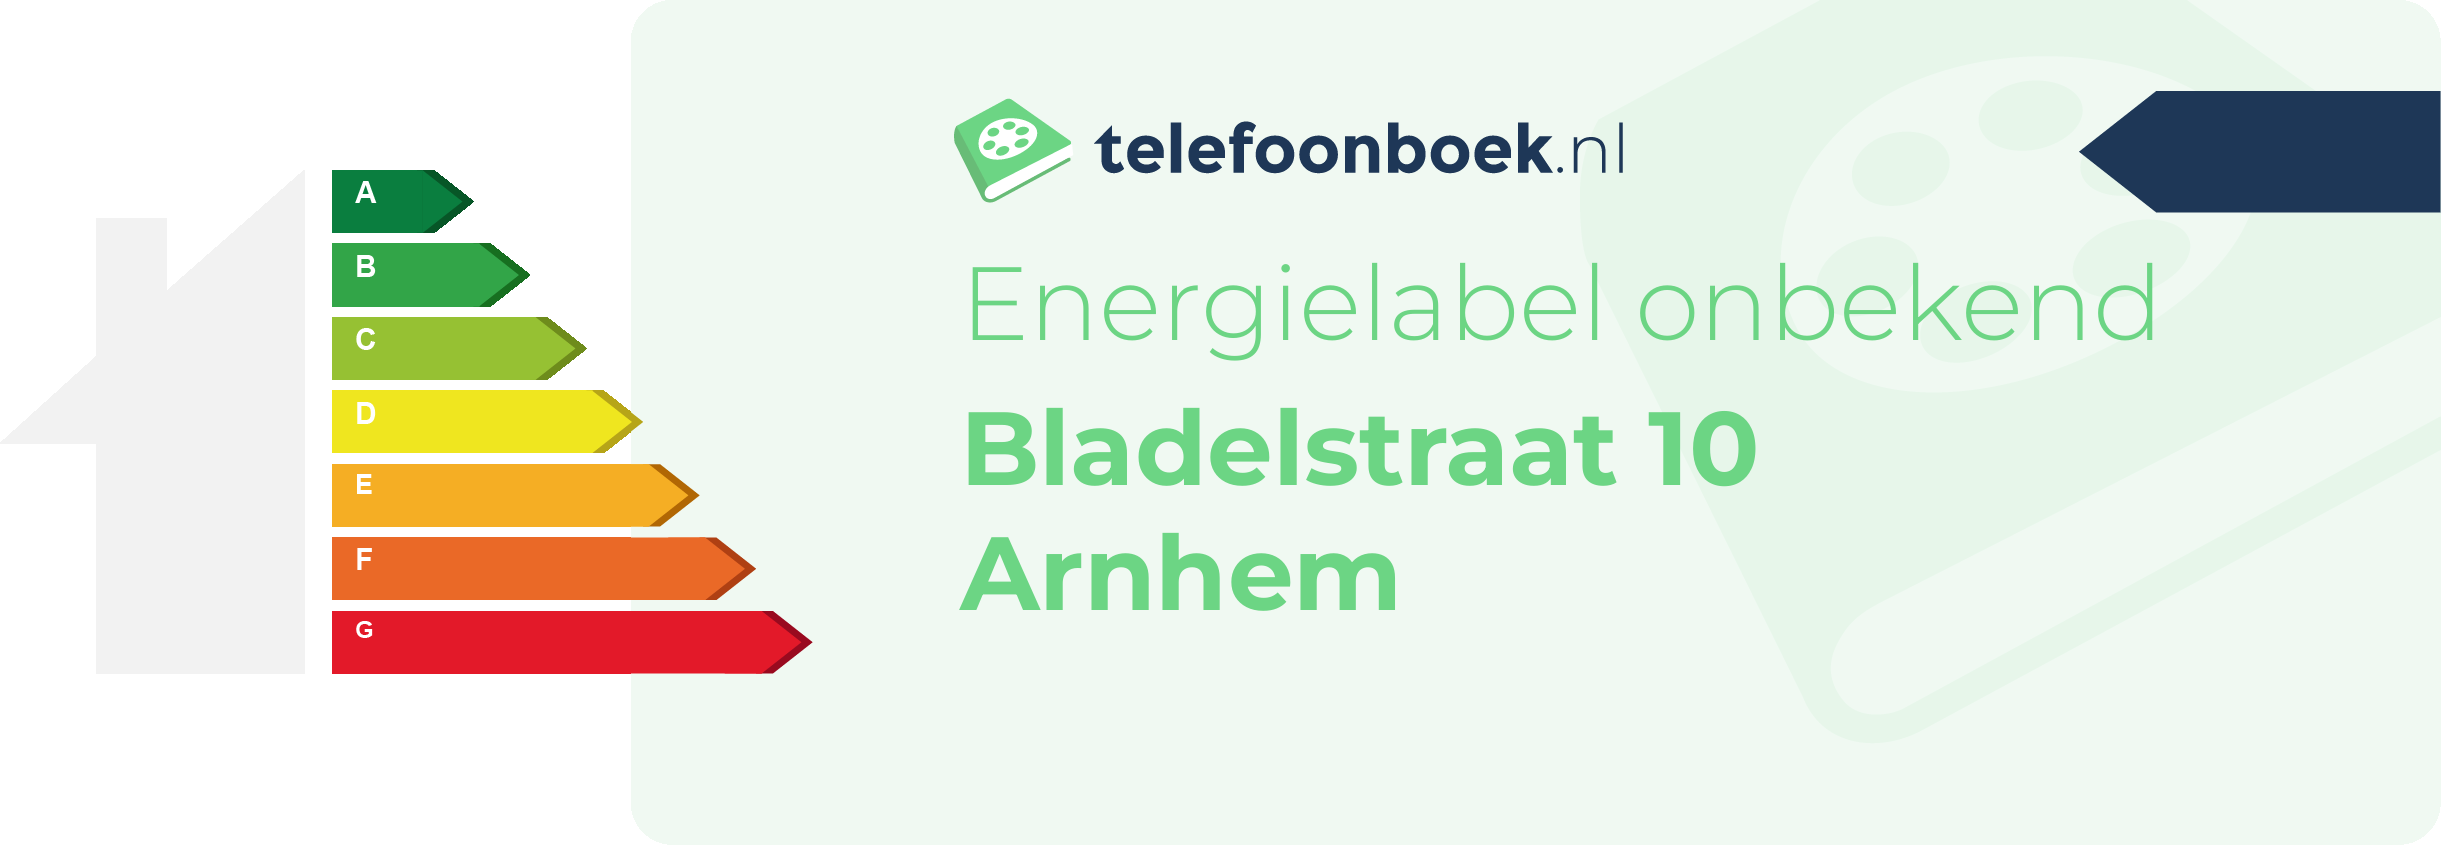 Energielabel Bladelstraat 10 Arnhem